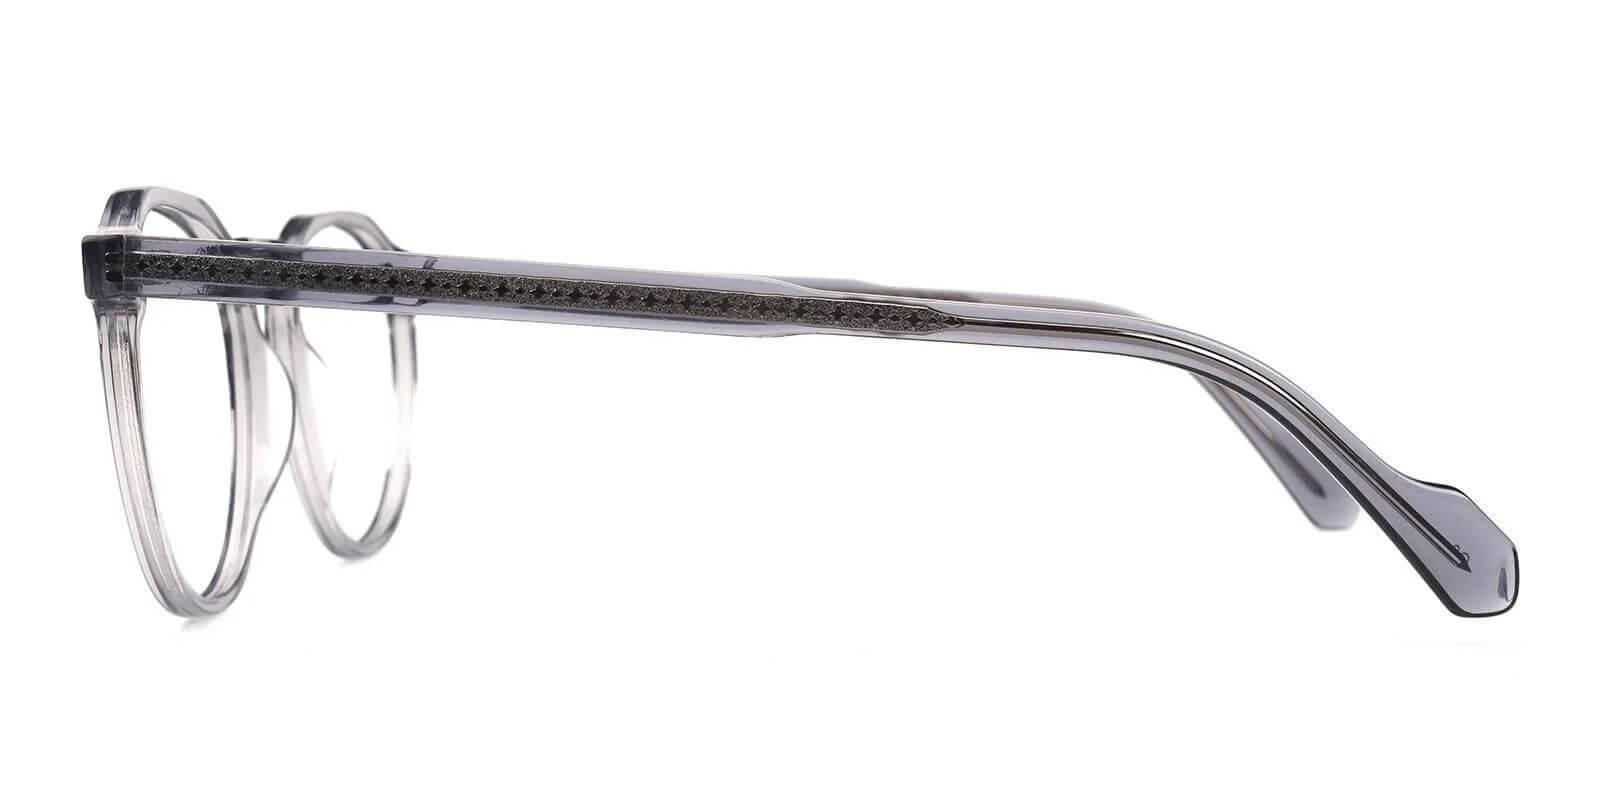 Carnival Gray Acetate Eyeglasses , SpringHinges , UniversalBridgeFit Frames from ABBE Glasses